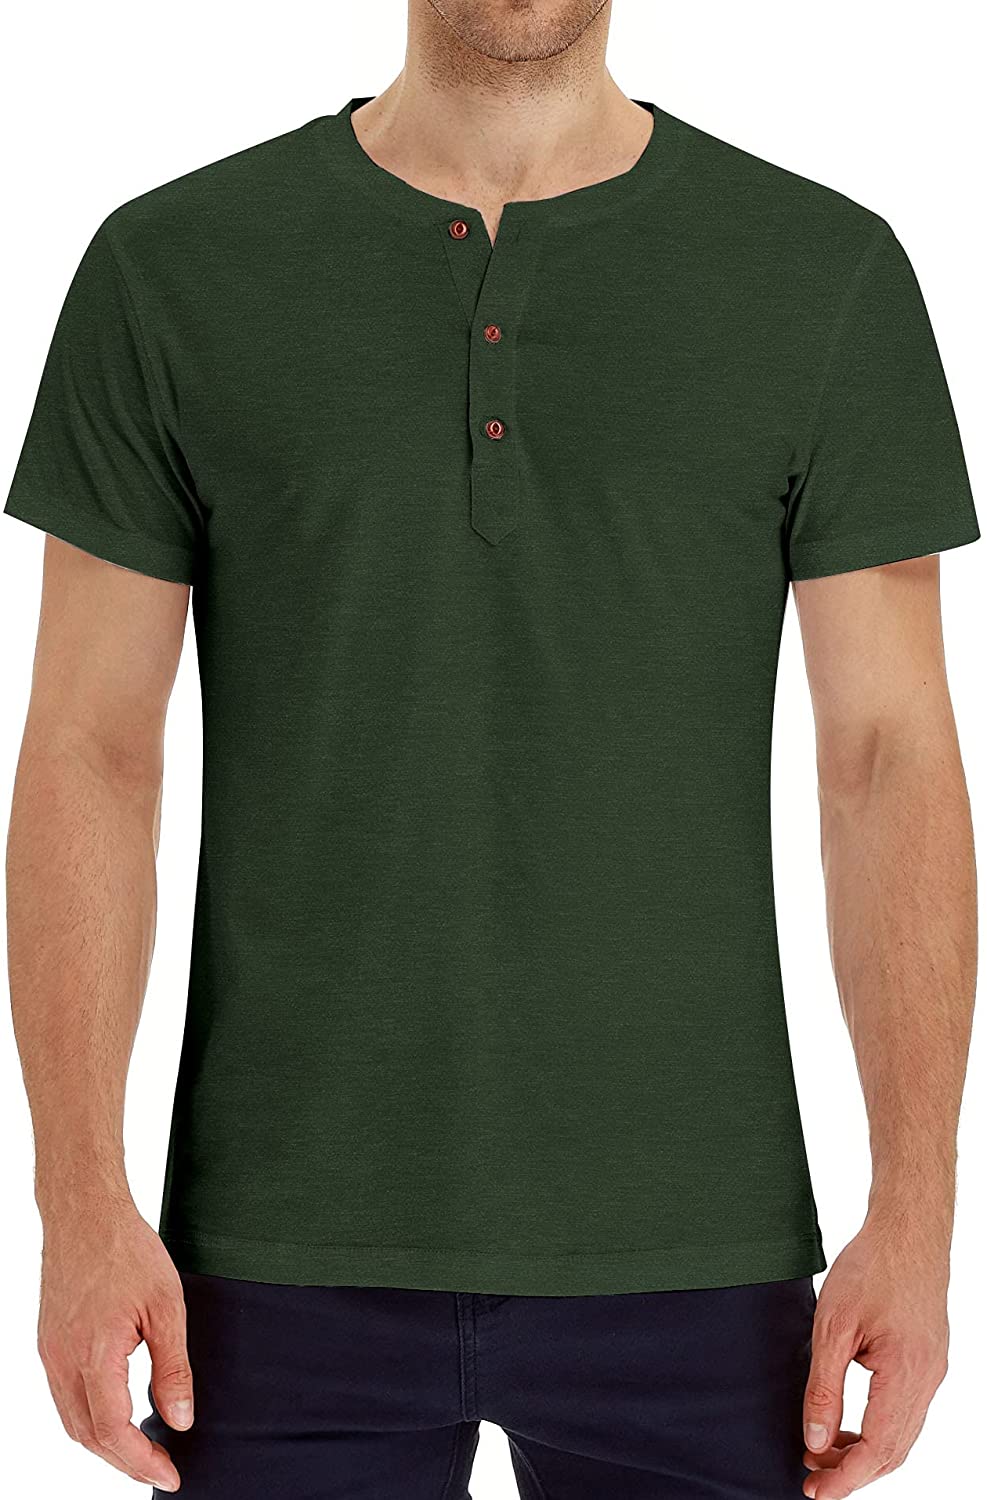 Hey Sir Mens Henley Long/Short Sleeve T-Shirt Cotton Casual Shirt